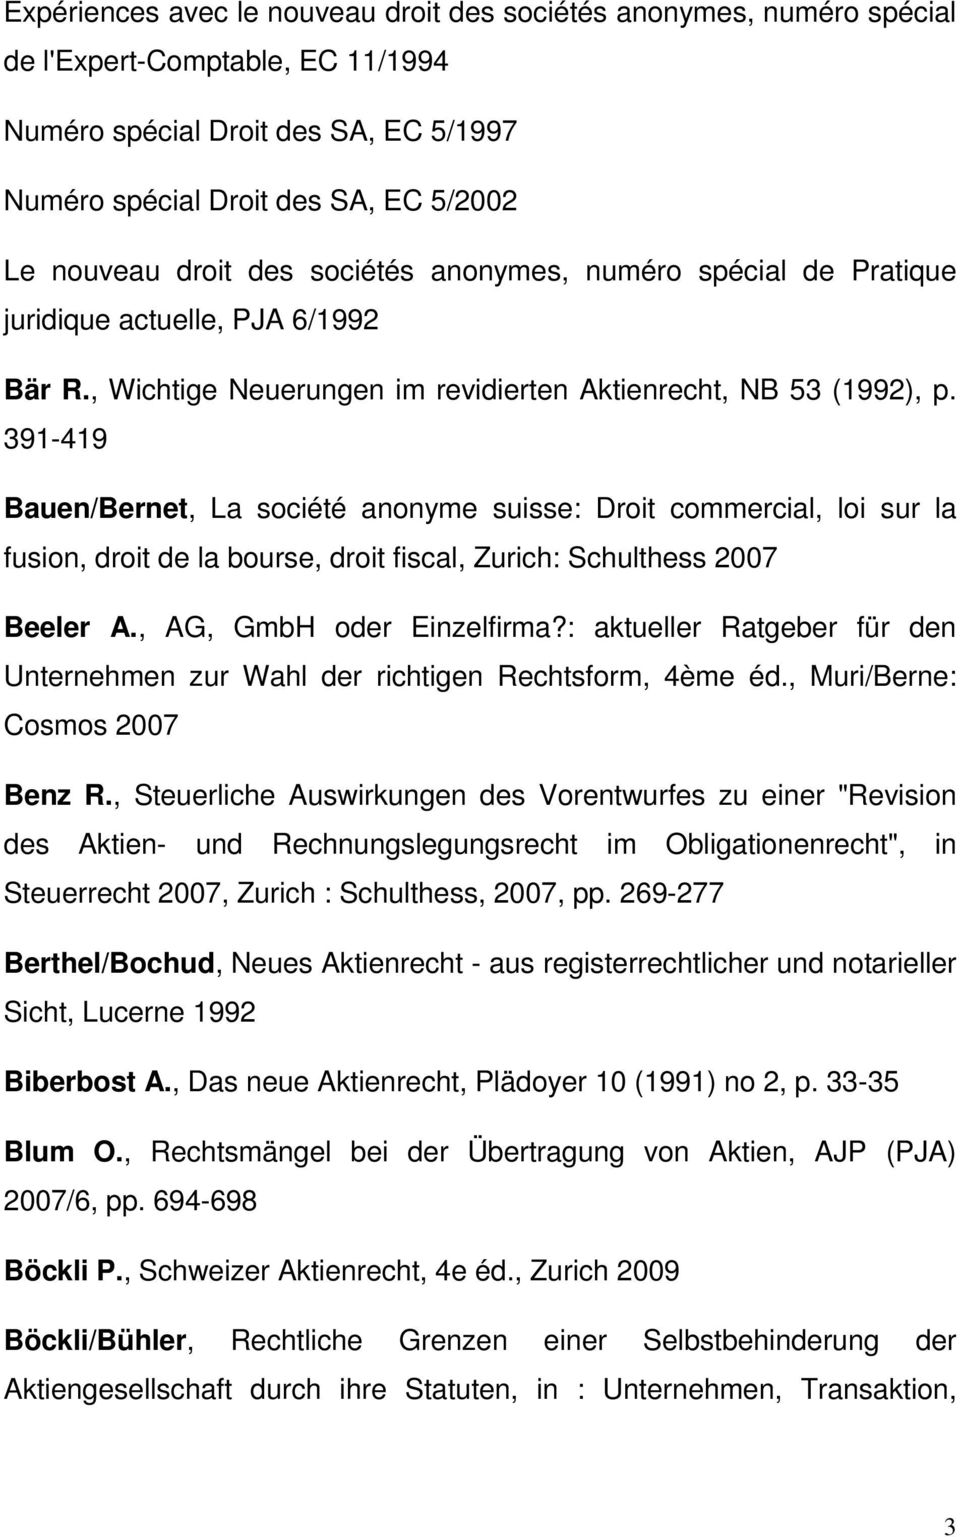 391-419 Bauen/Bernet, La société anonyme suisse: Droit commercial, loi sur la fusion, droit de la bourse, droit fiscal, Zurich: Schulthess 2007 Beeler A., AG, GmbH oder Einzelfirma?